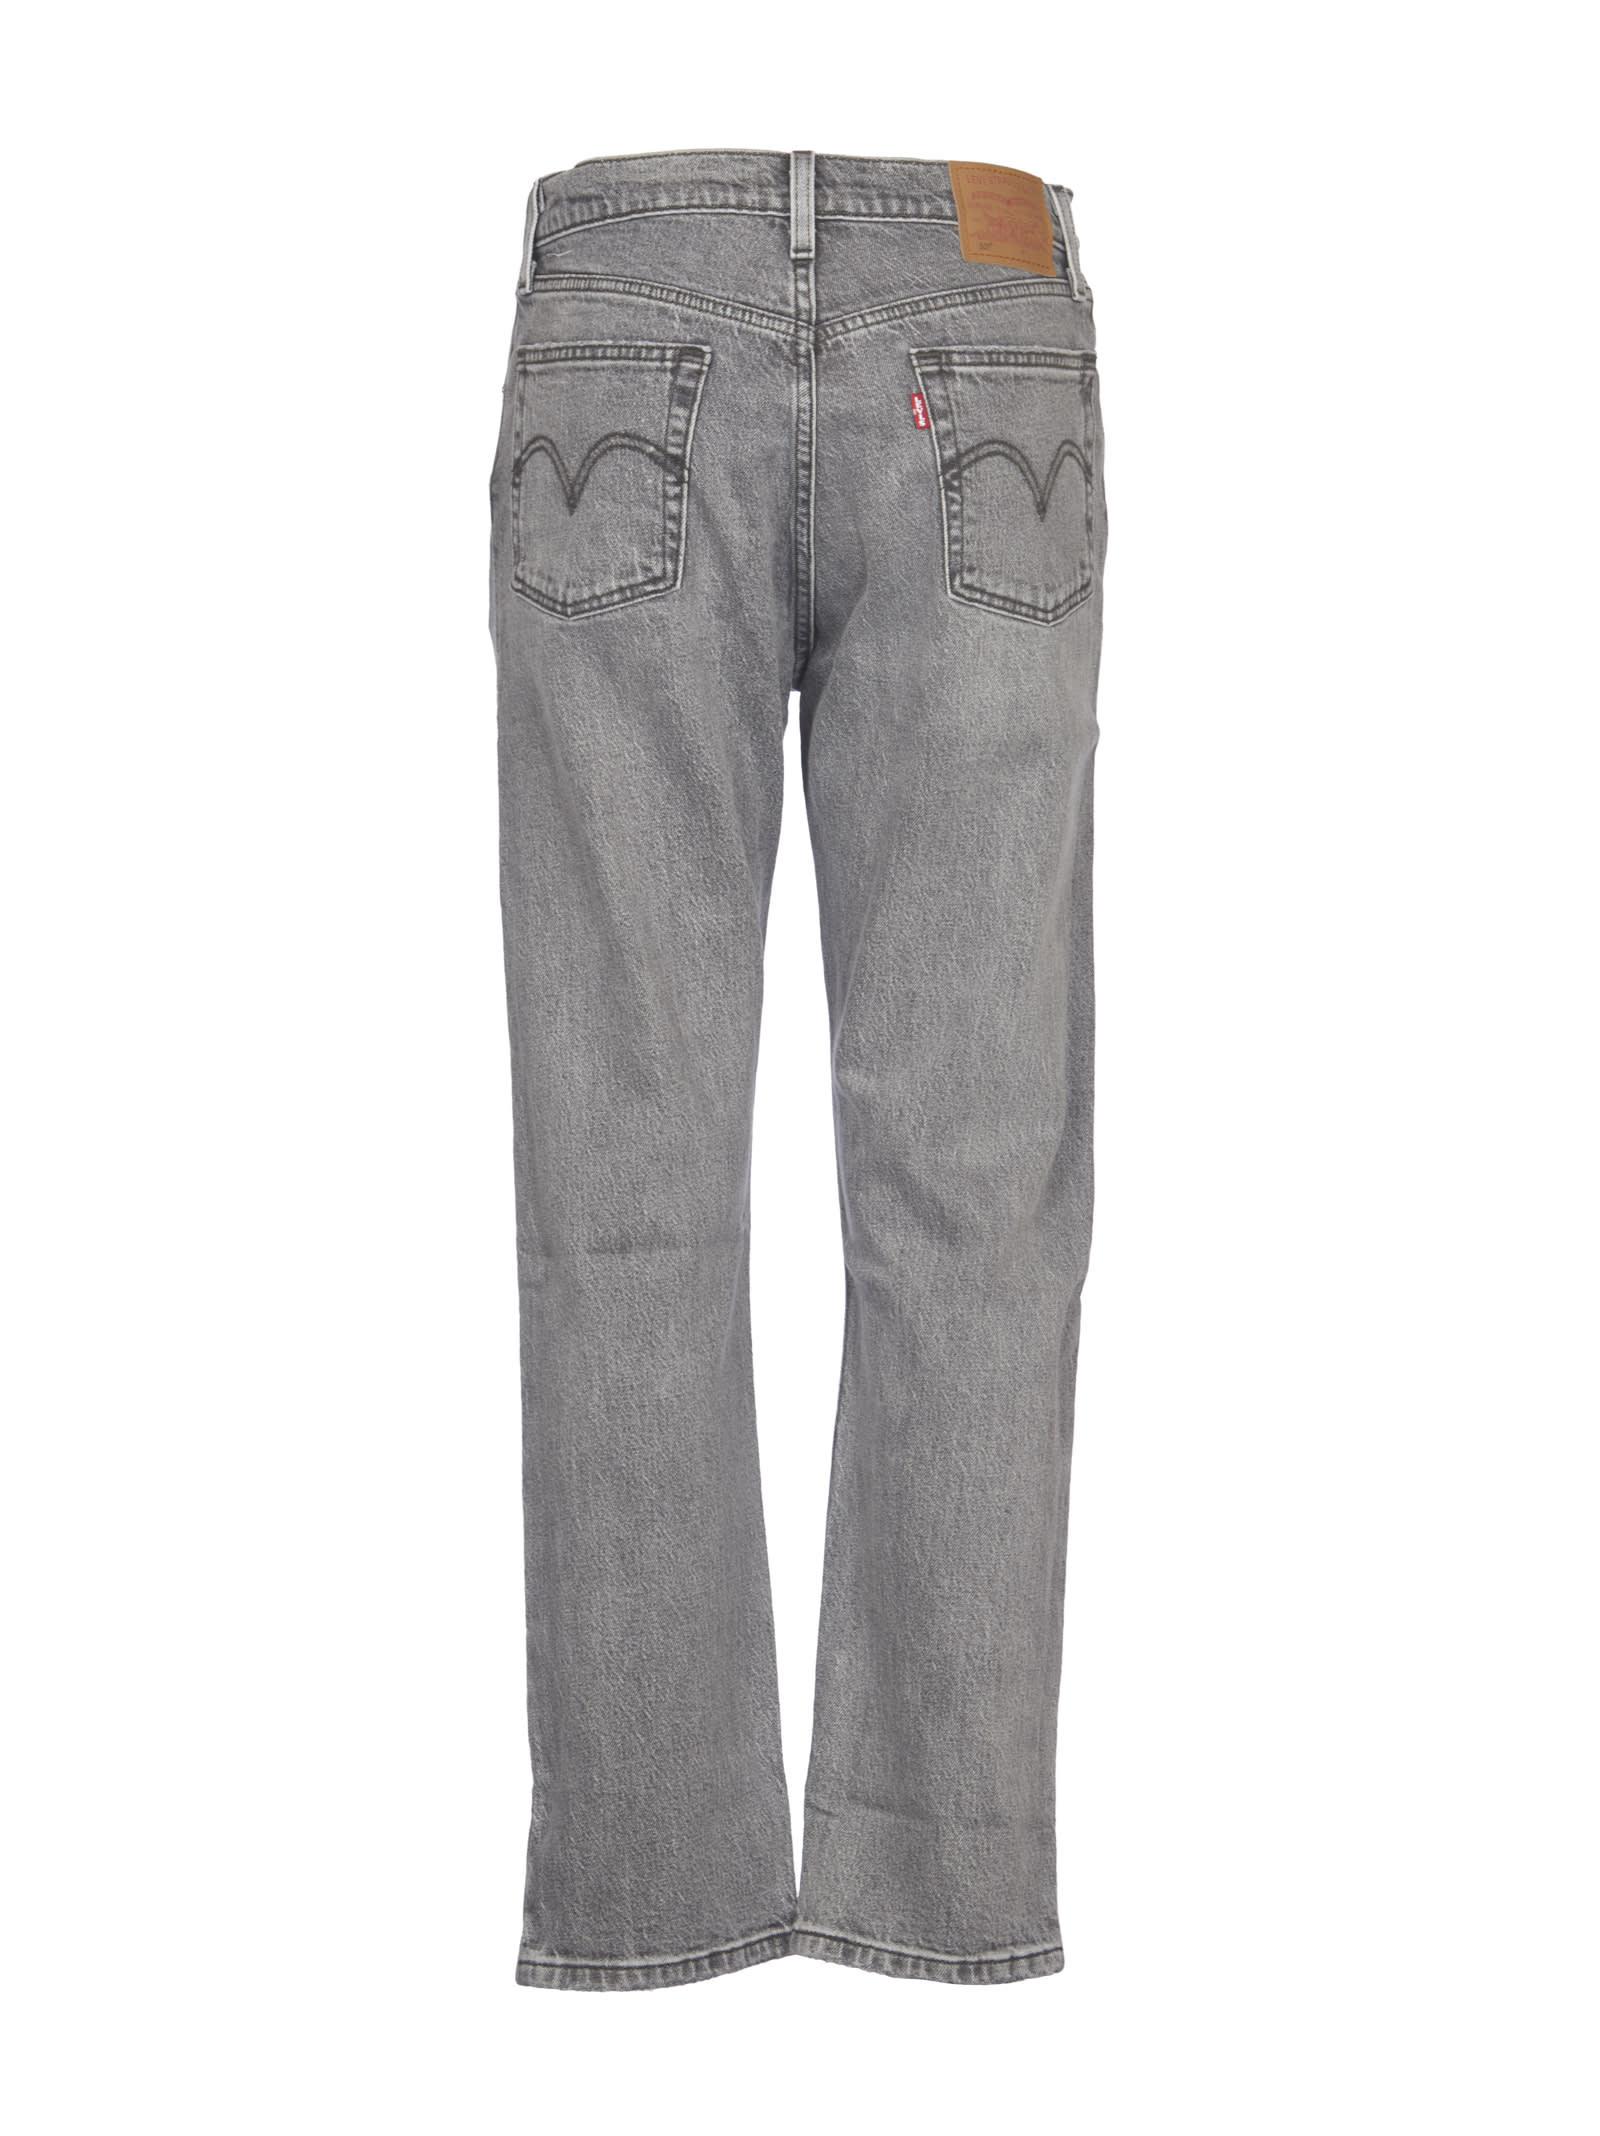 Shop Levi's Grey 501 Jeans